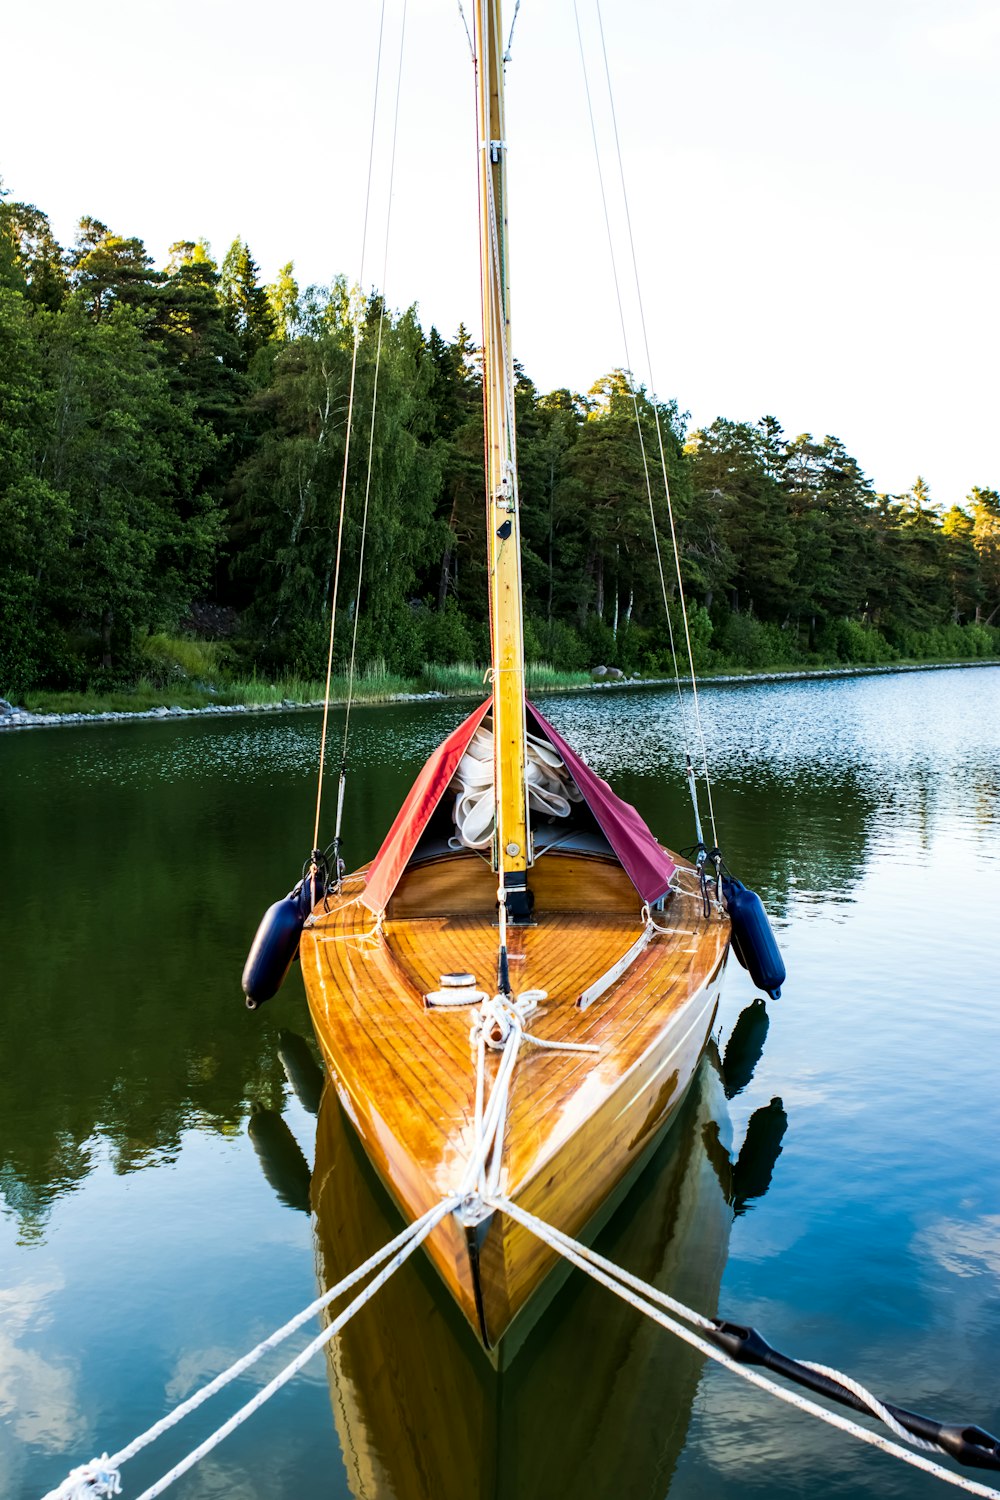 brown boat on lake during daytime